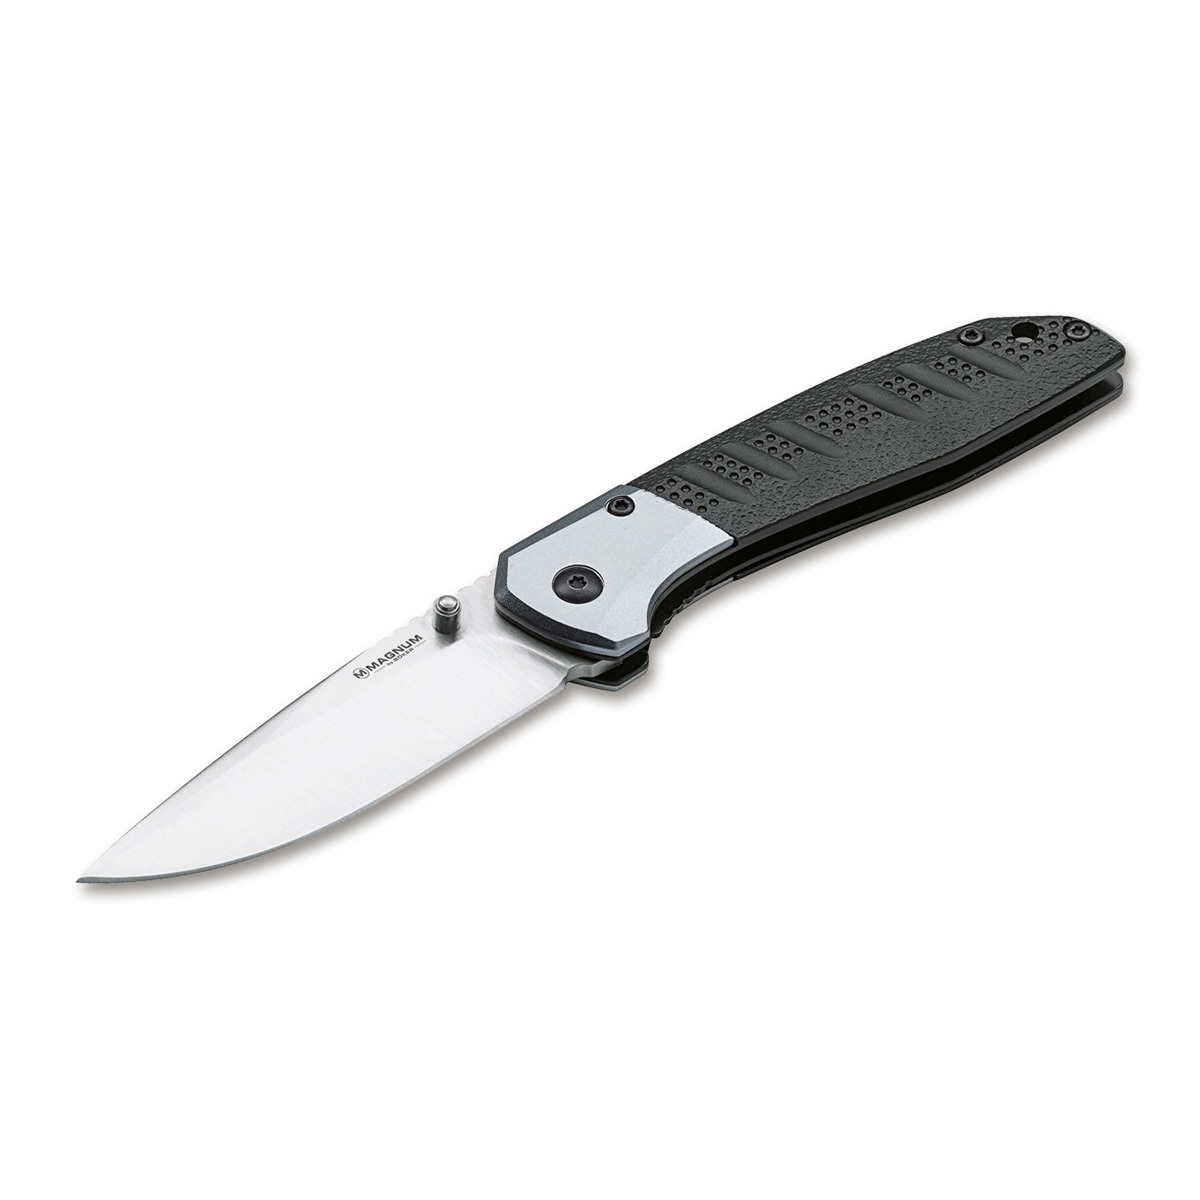 Нож складной Boker Advance pro edc, сталь 440C, рукоять алюминий нож с фиксированным клинком extrema ratio golem sandblasted 2 сталь bhler n690 рукоять резина forprene®